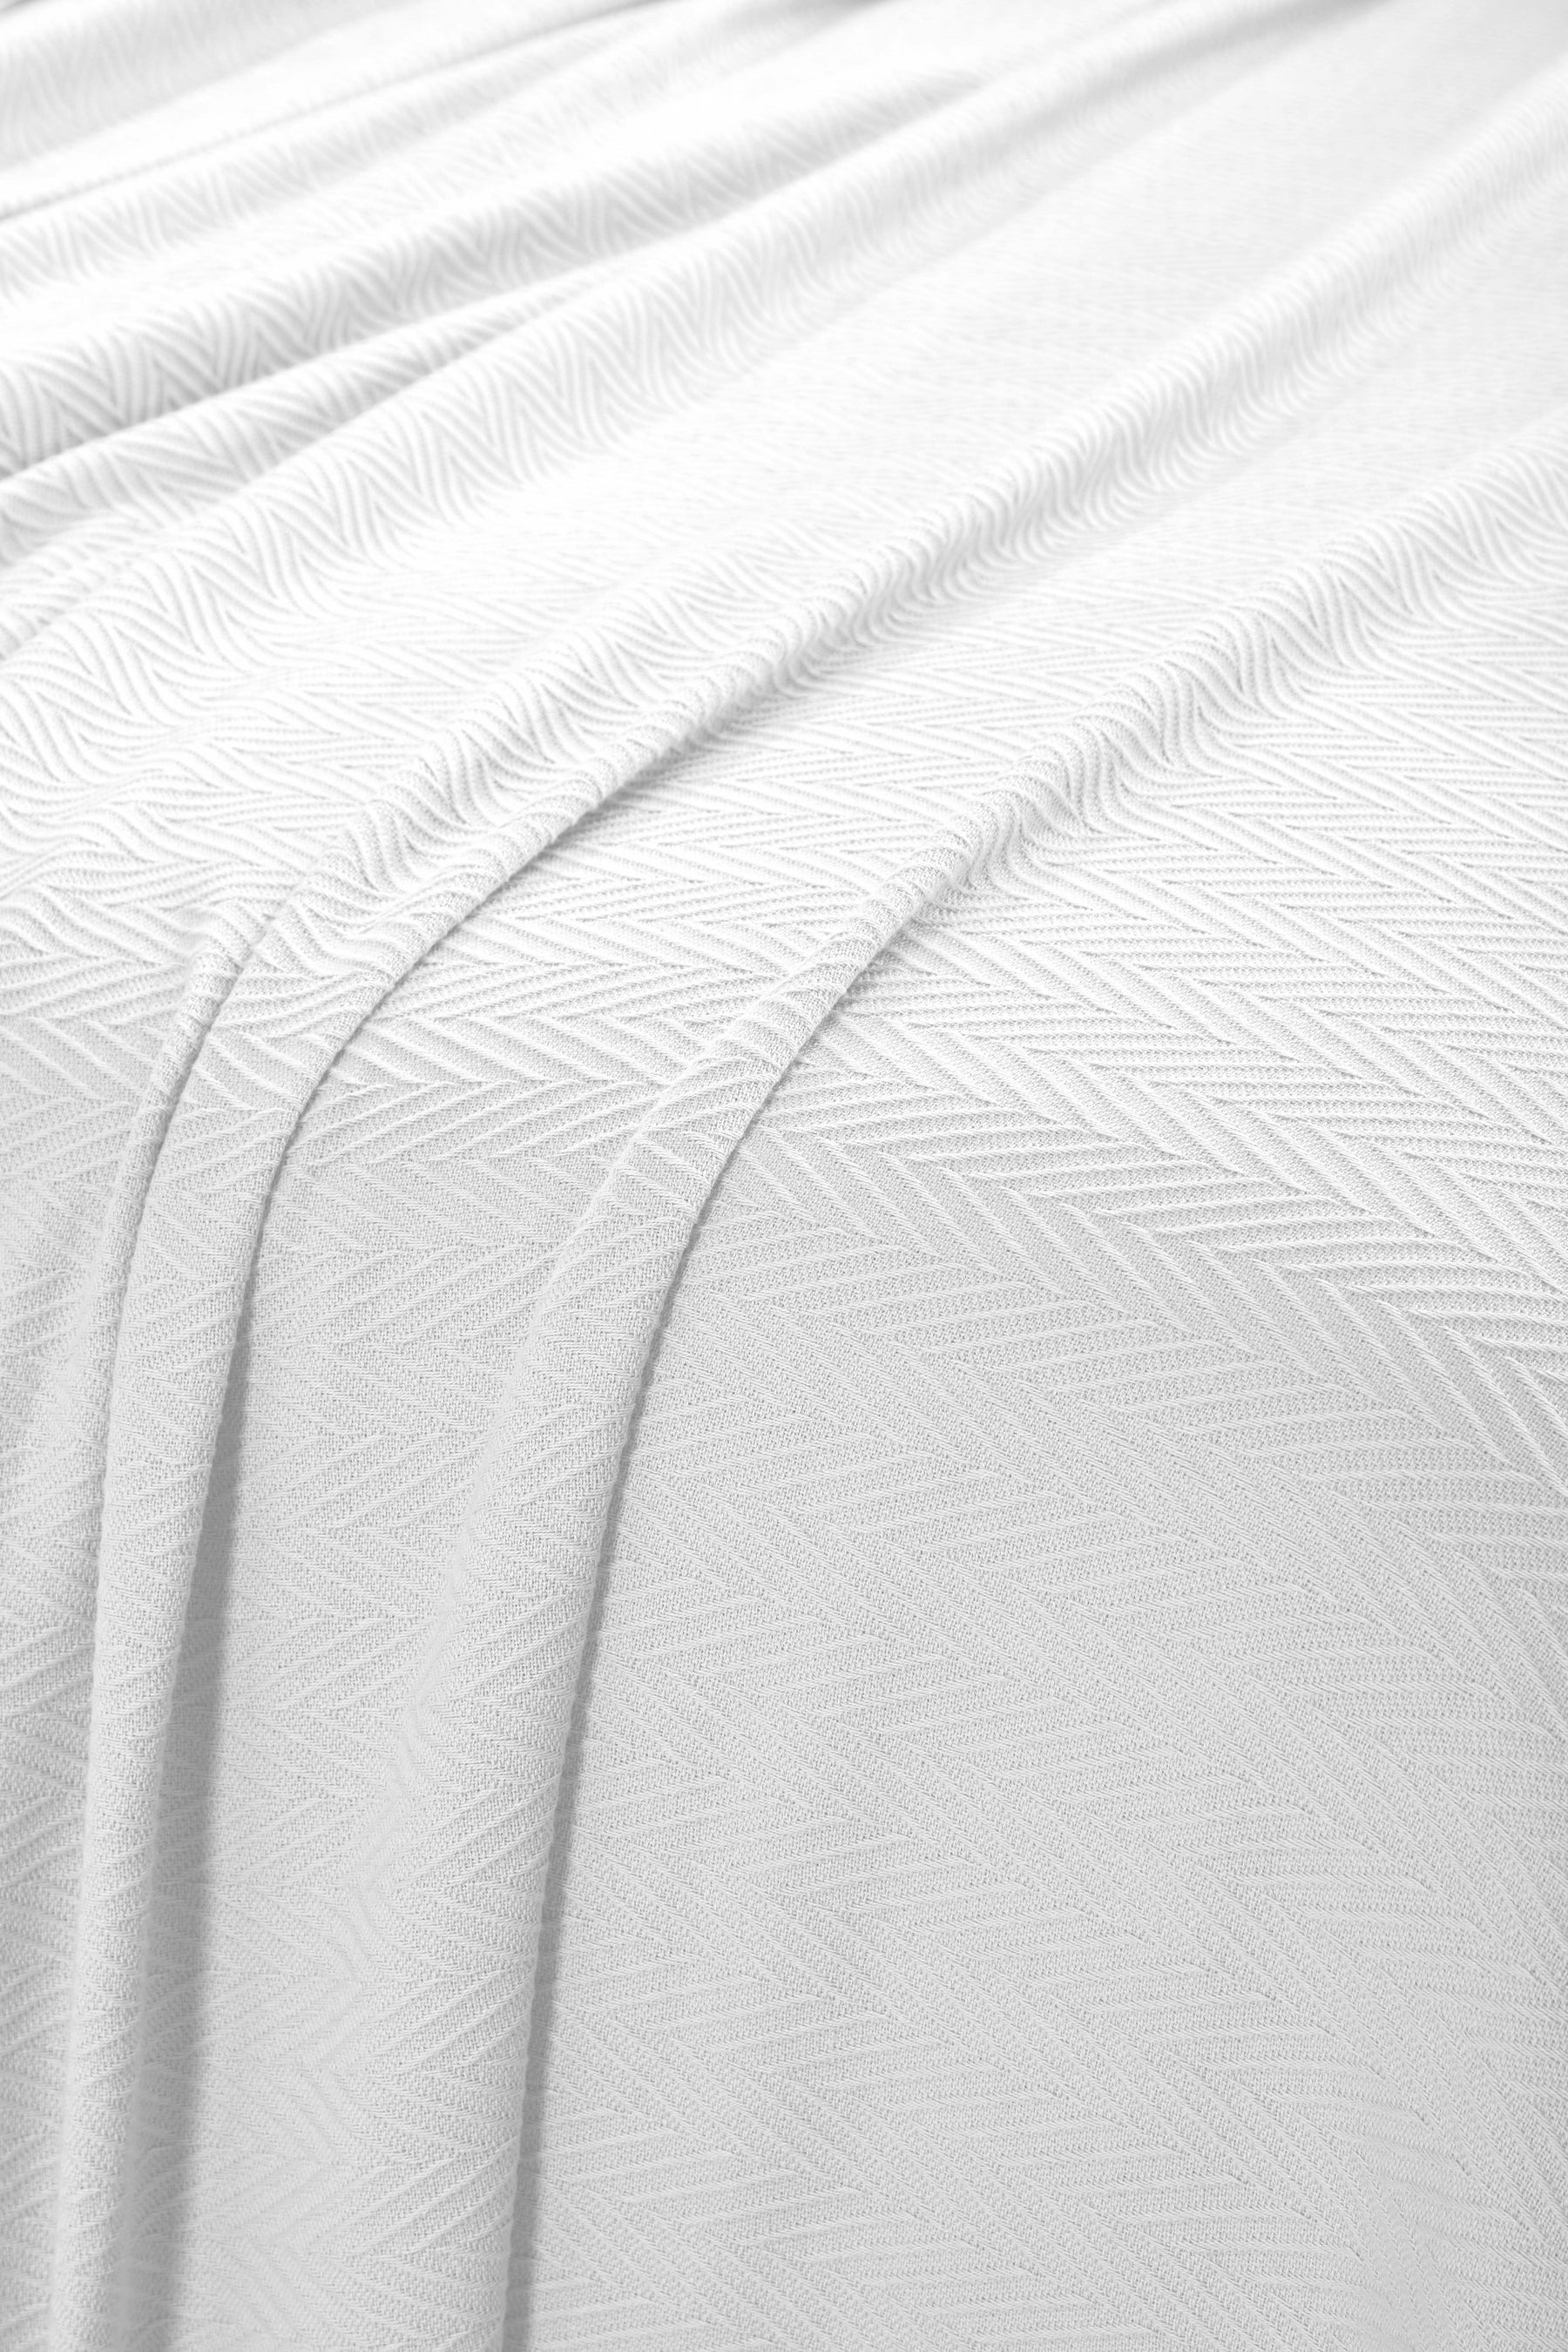 Chevron All-Season Cotton Blanket - White